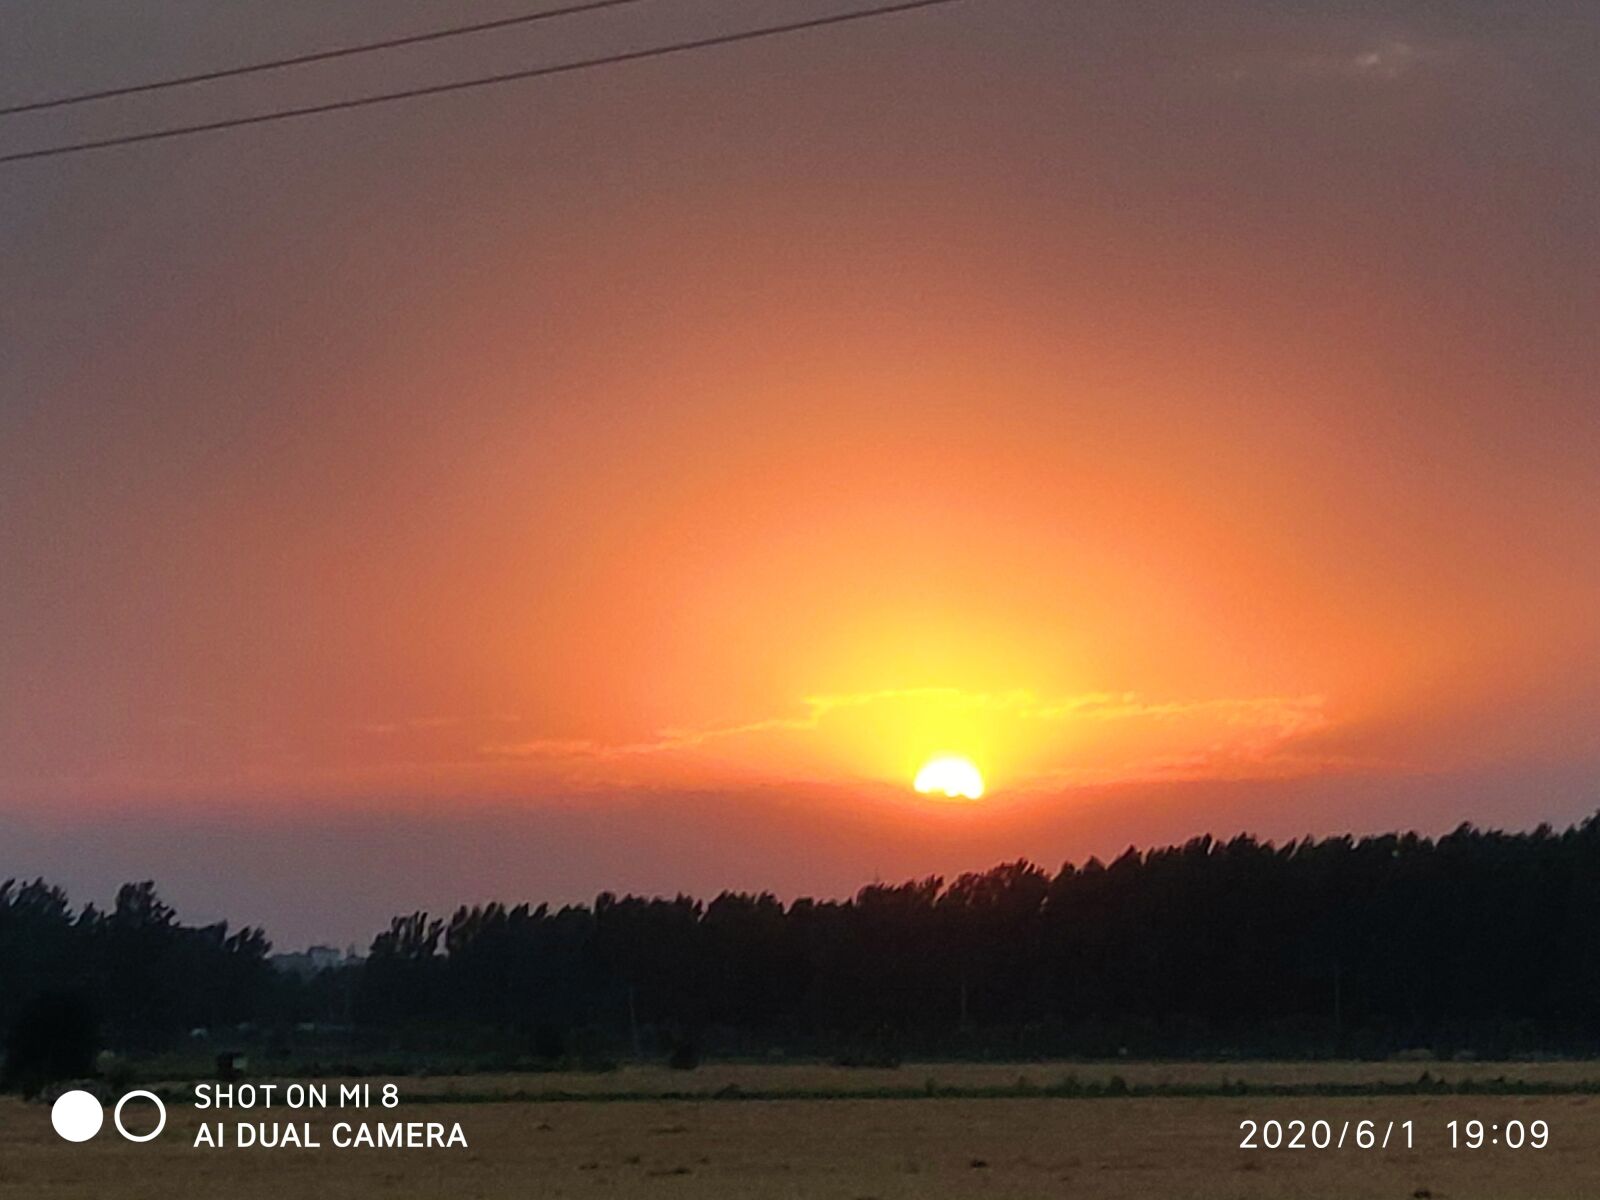 Xiaomi MI 8 sample photo. Twilight, sunset, sun photography